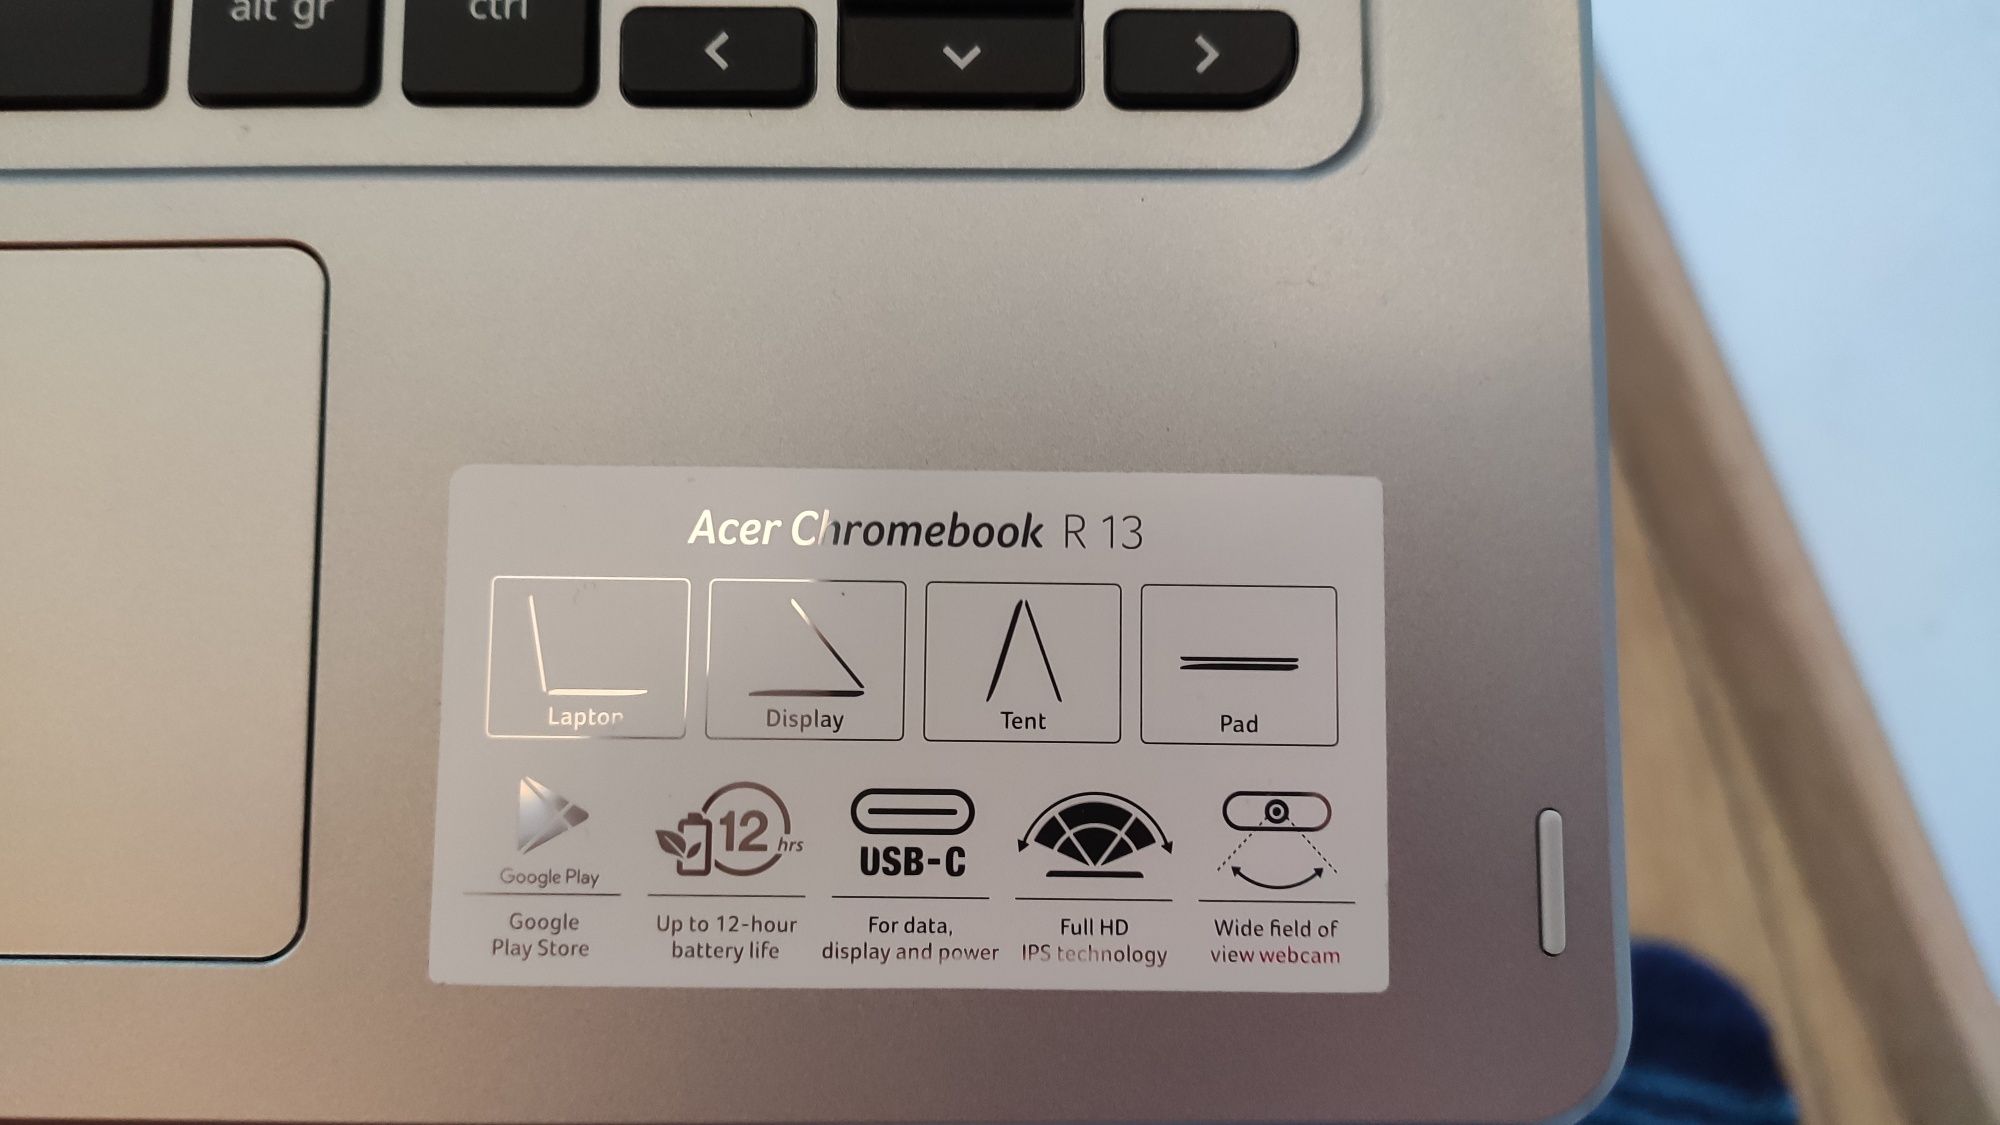 Acer Chromebook R13 4gb/64gb